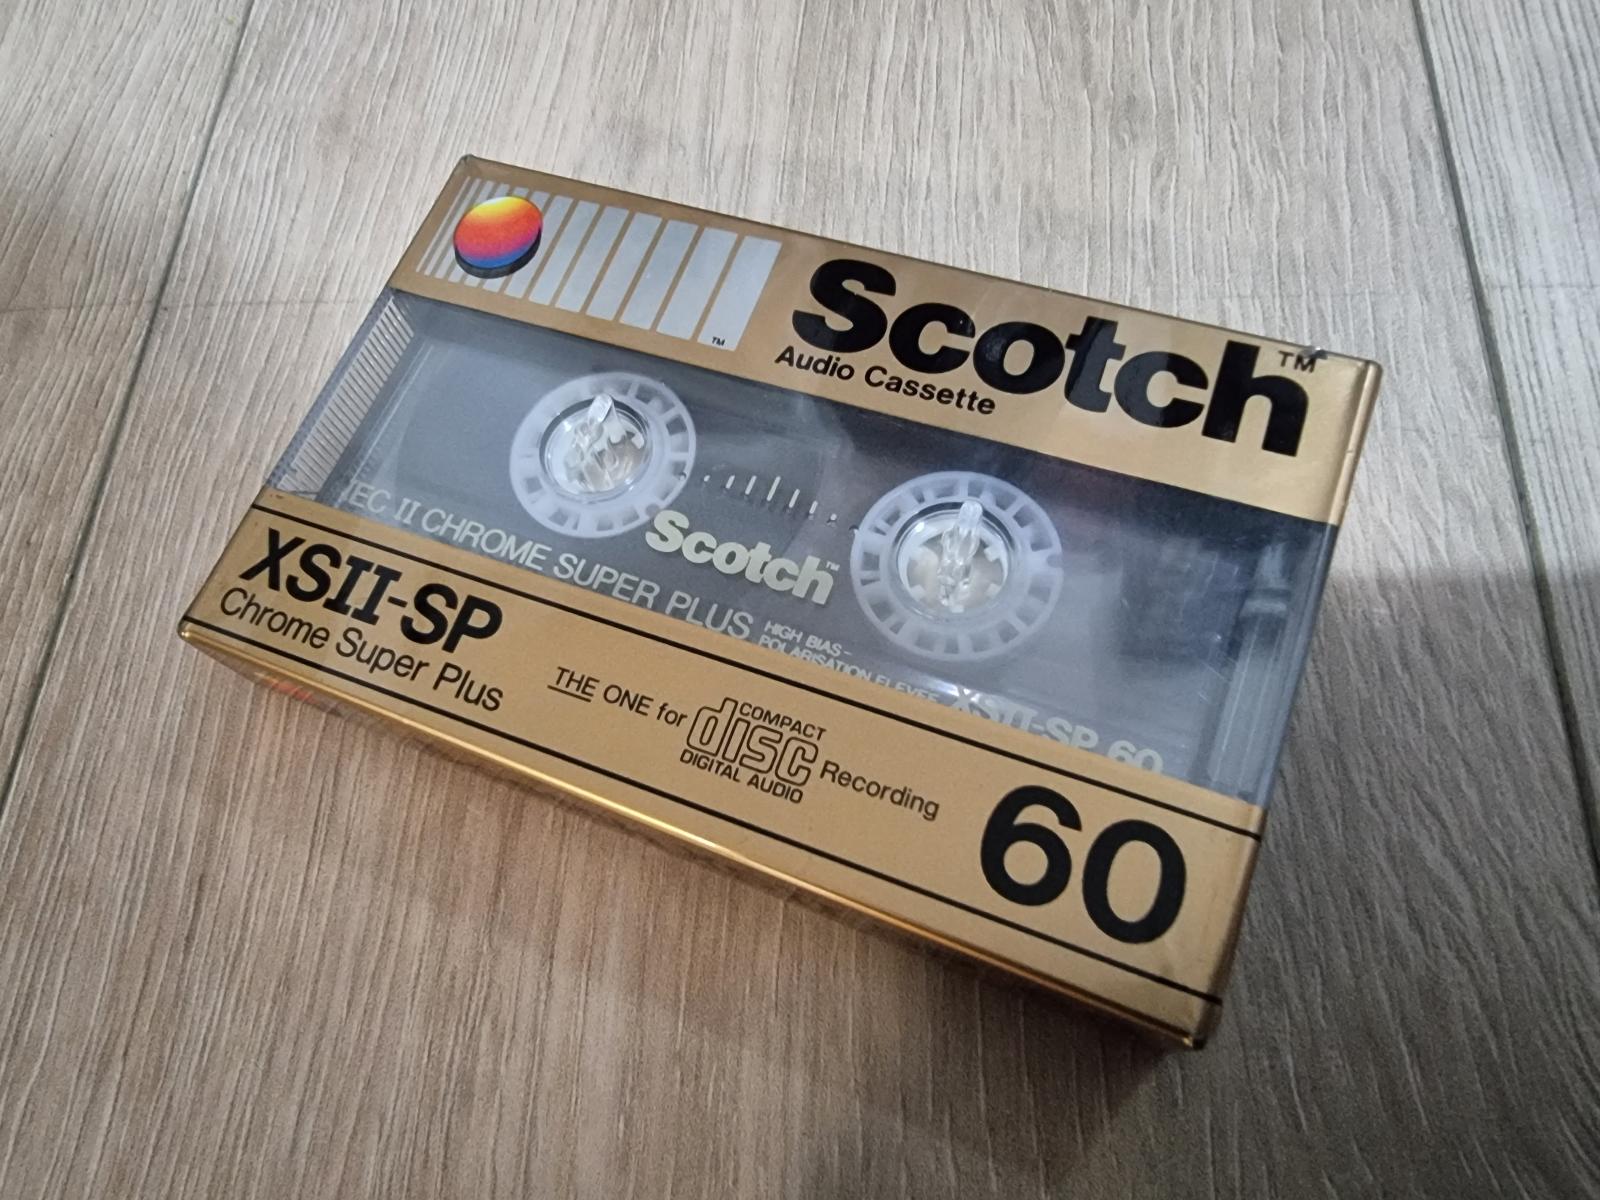 SCOTCH XSII-SP 60 - TV, audio, video